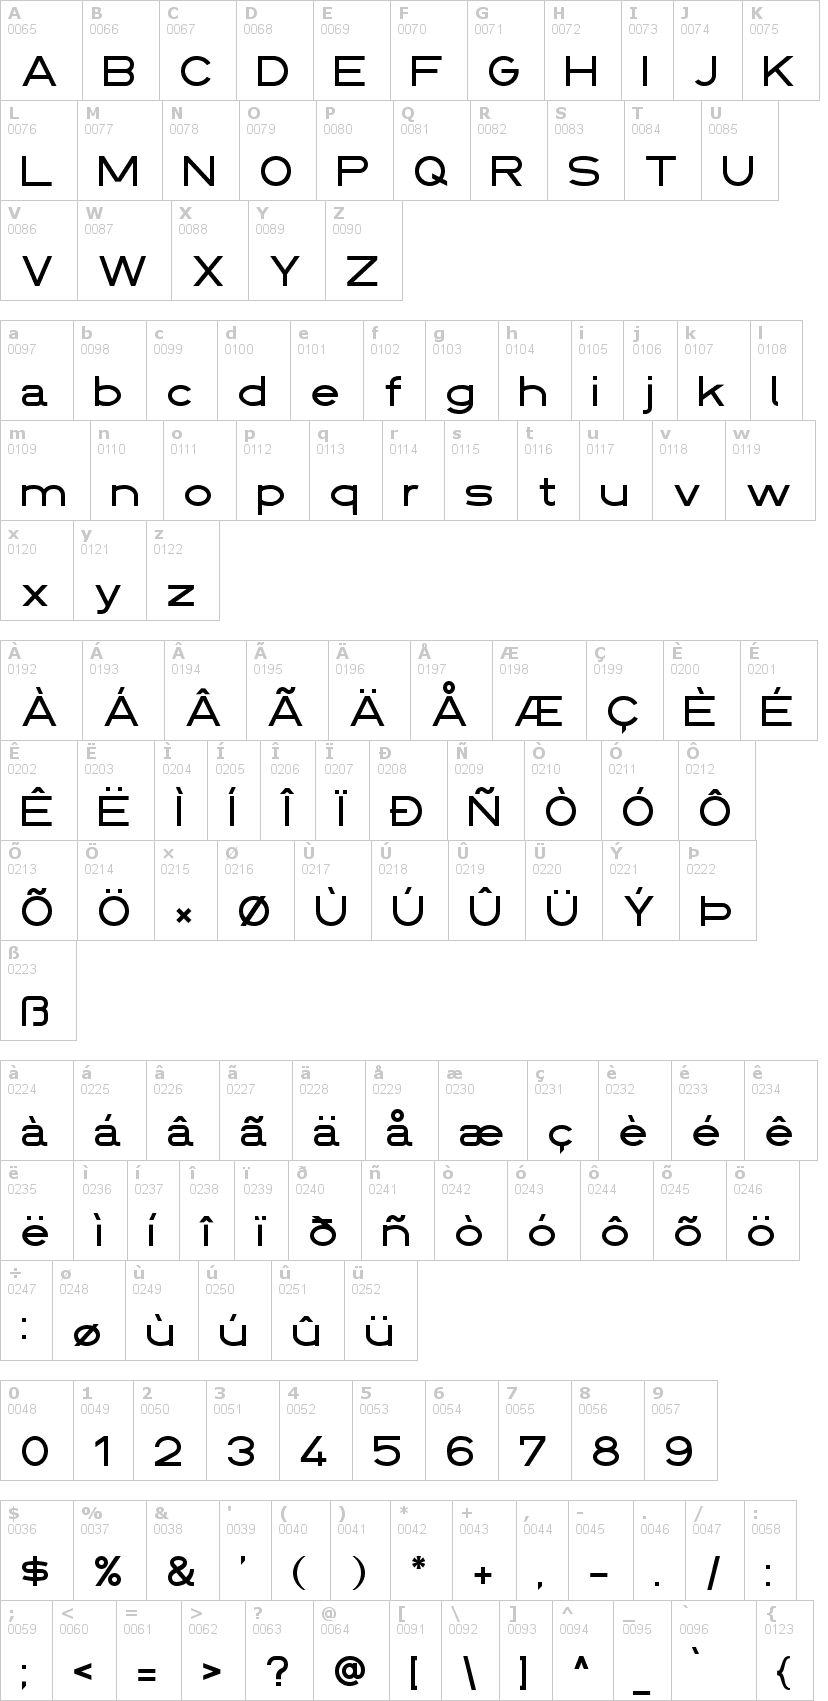 Lettere dell'alfabeto del font din-1451 con le quali è possibile realizzare adesivi prespaziati